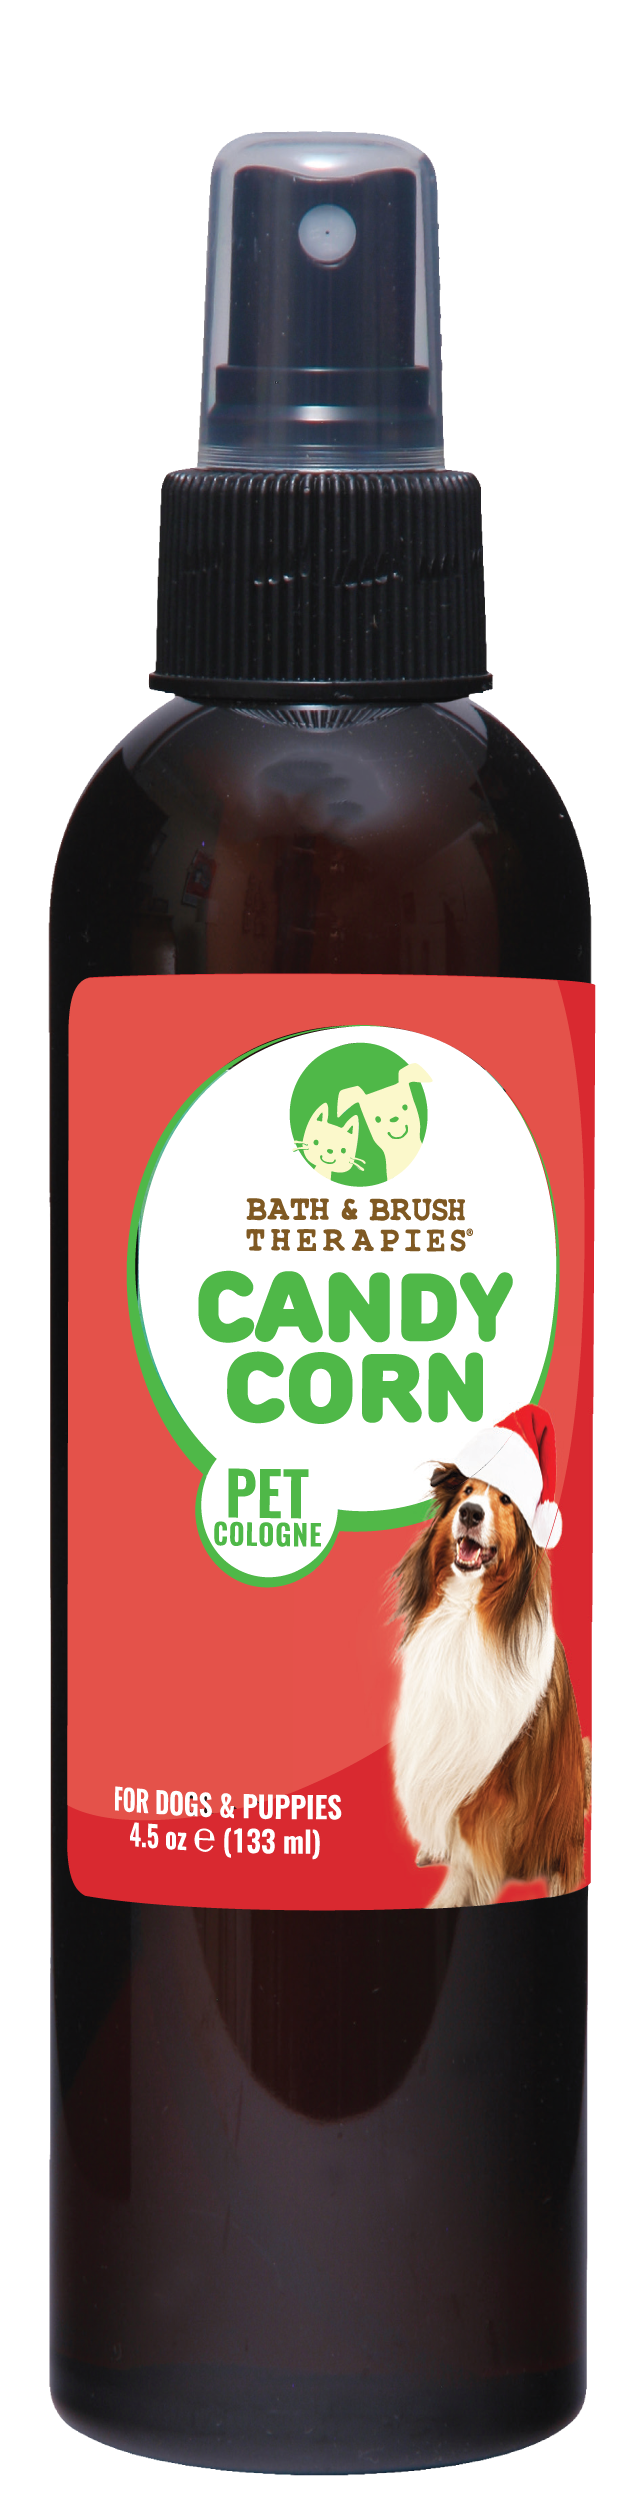 Candy Corn Pet Cologne